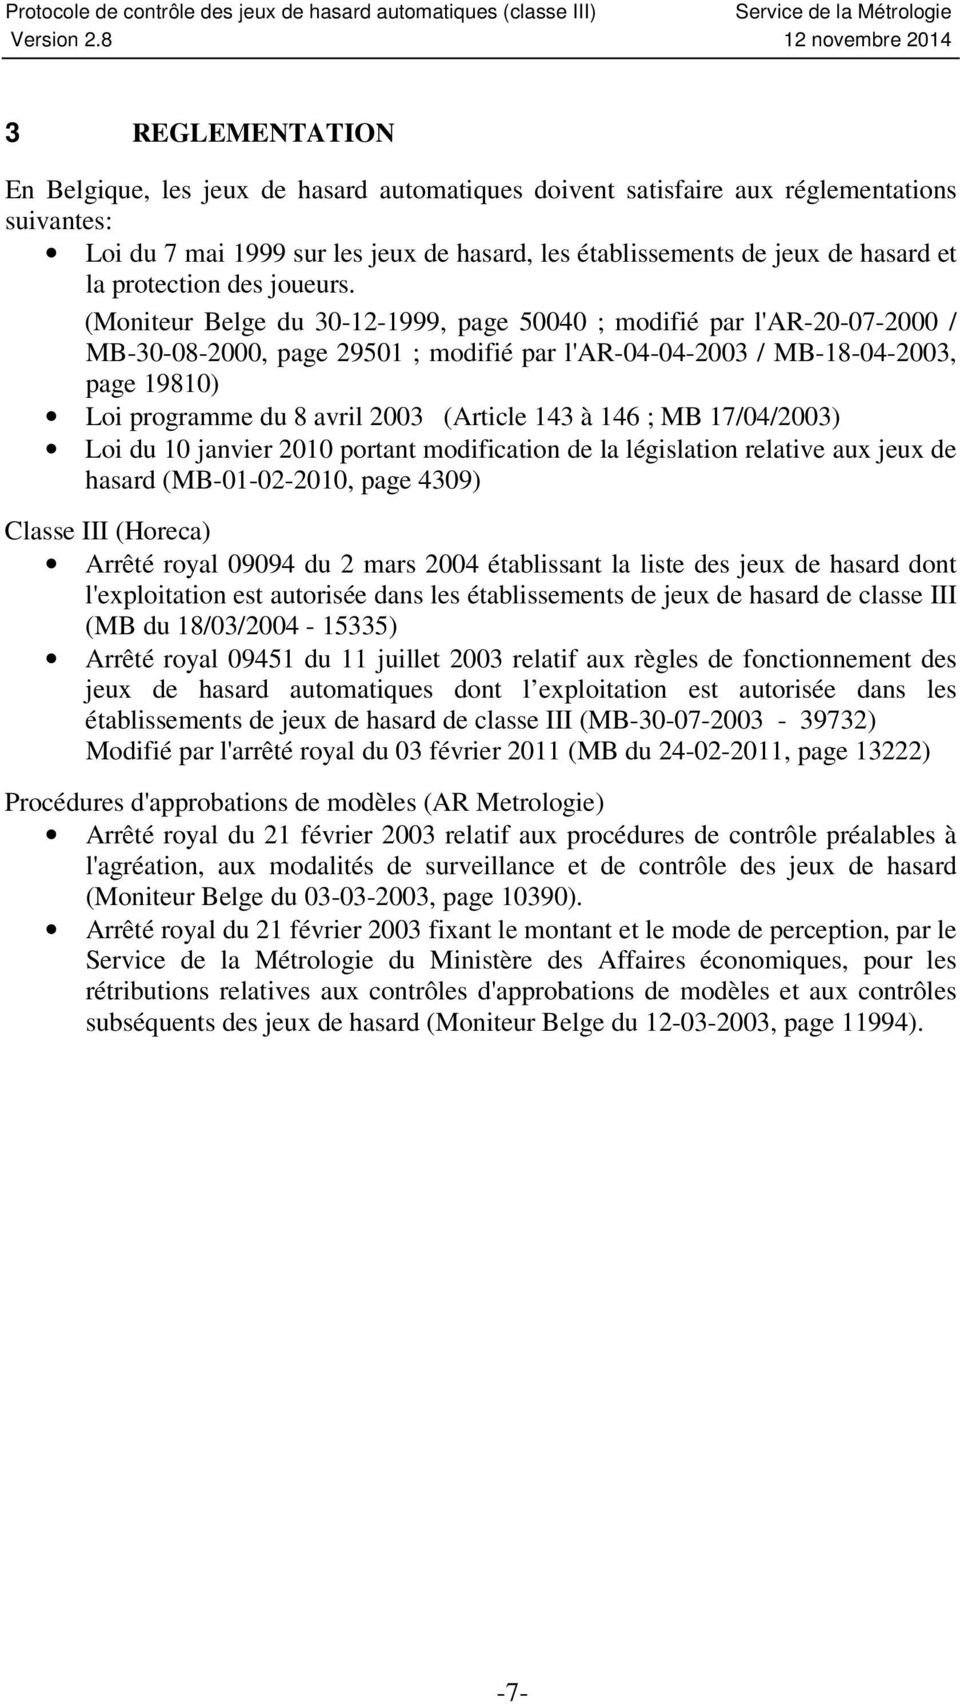 (Moniteur Belge du 30-12-1999, page 50040 ; modifié par l'ar-20-07-2000 / MB-30-08-2000, page 29501 ; modifié par l'ar-04-04-2003 / MB-18-04-2003, page 19810) Loi programme du 8 avril 2003 (Article